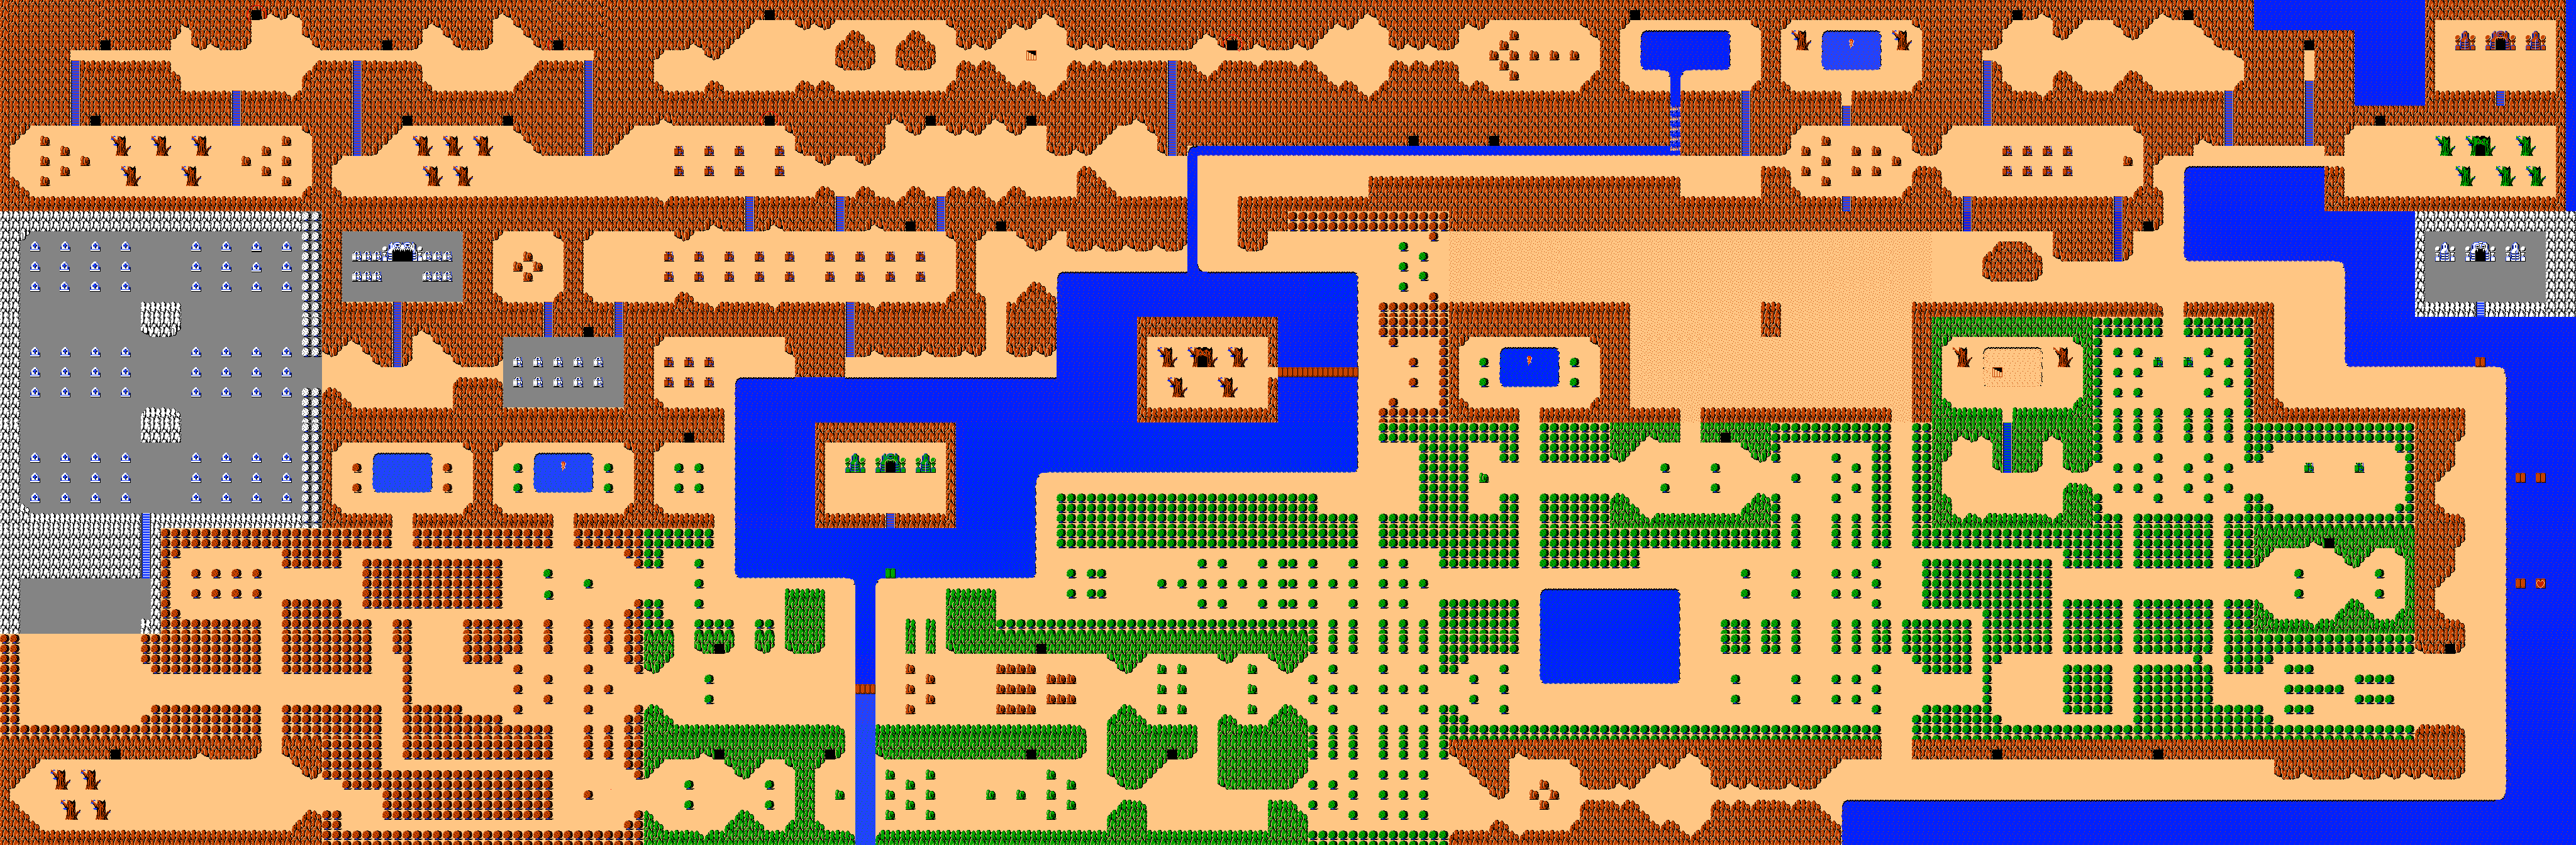 legend of zelda quest 2 map.